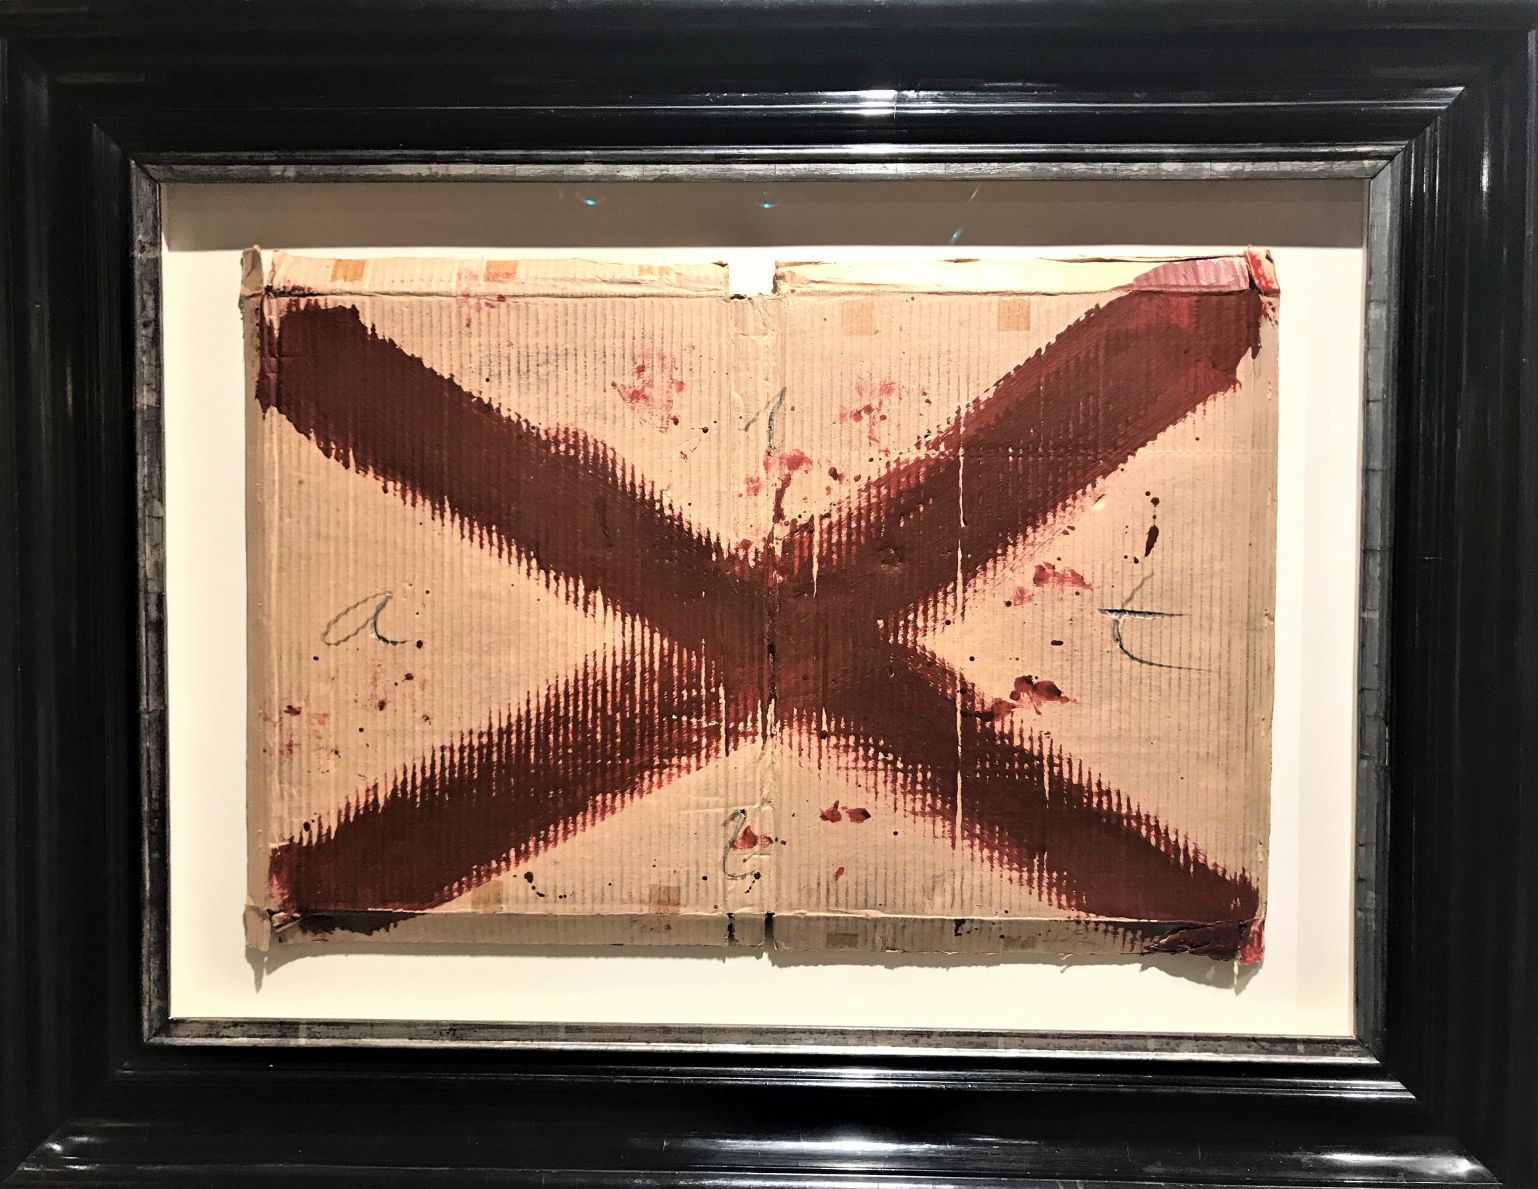 Creu vermella (1970) - Antoni Tàpies